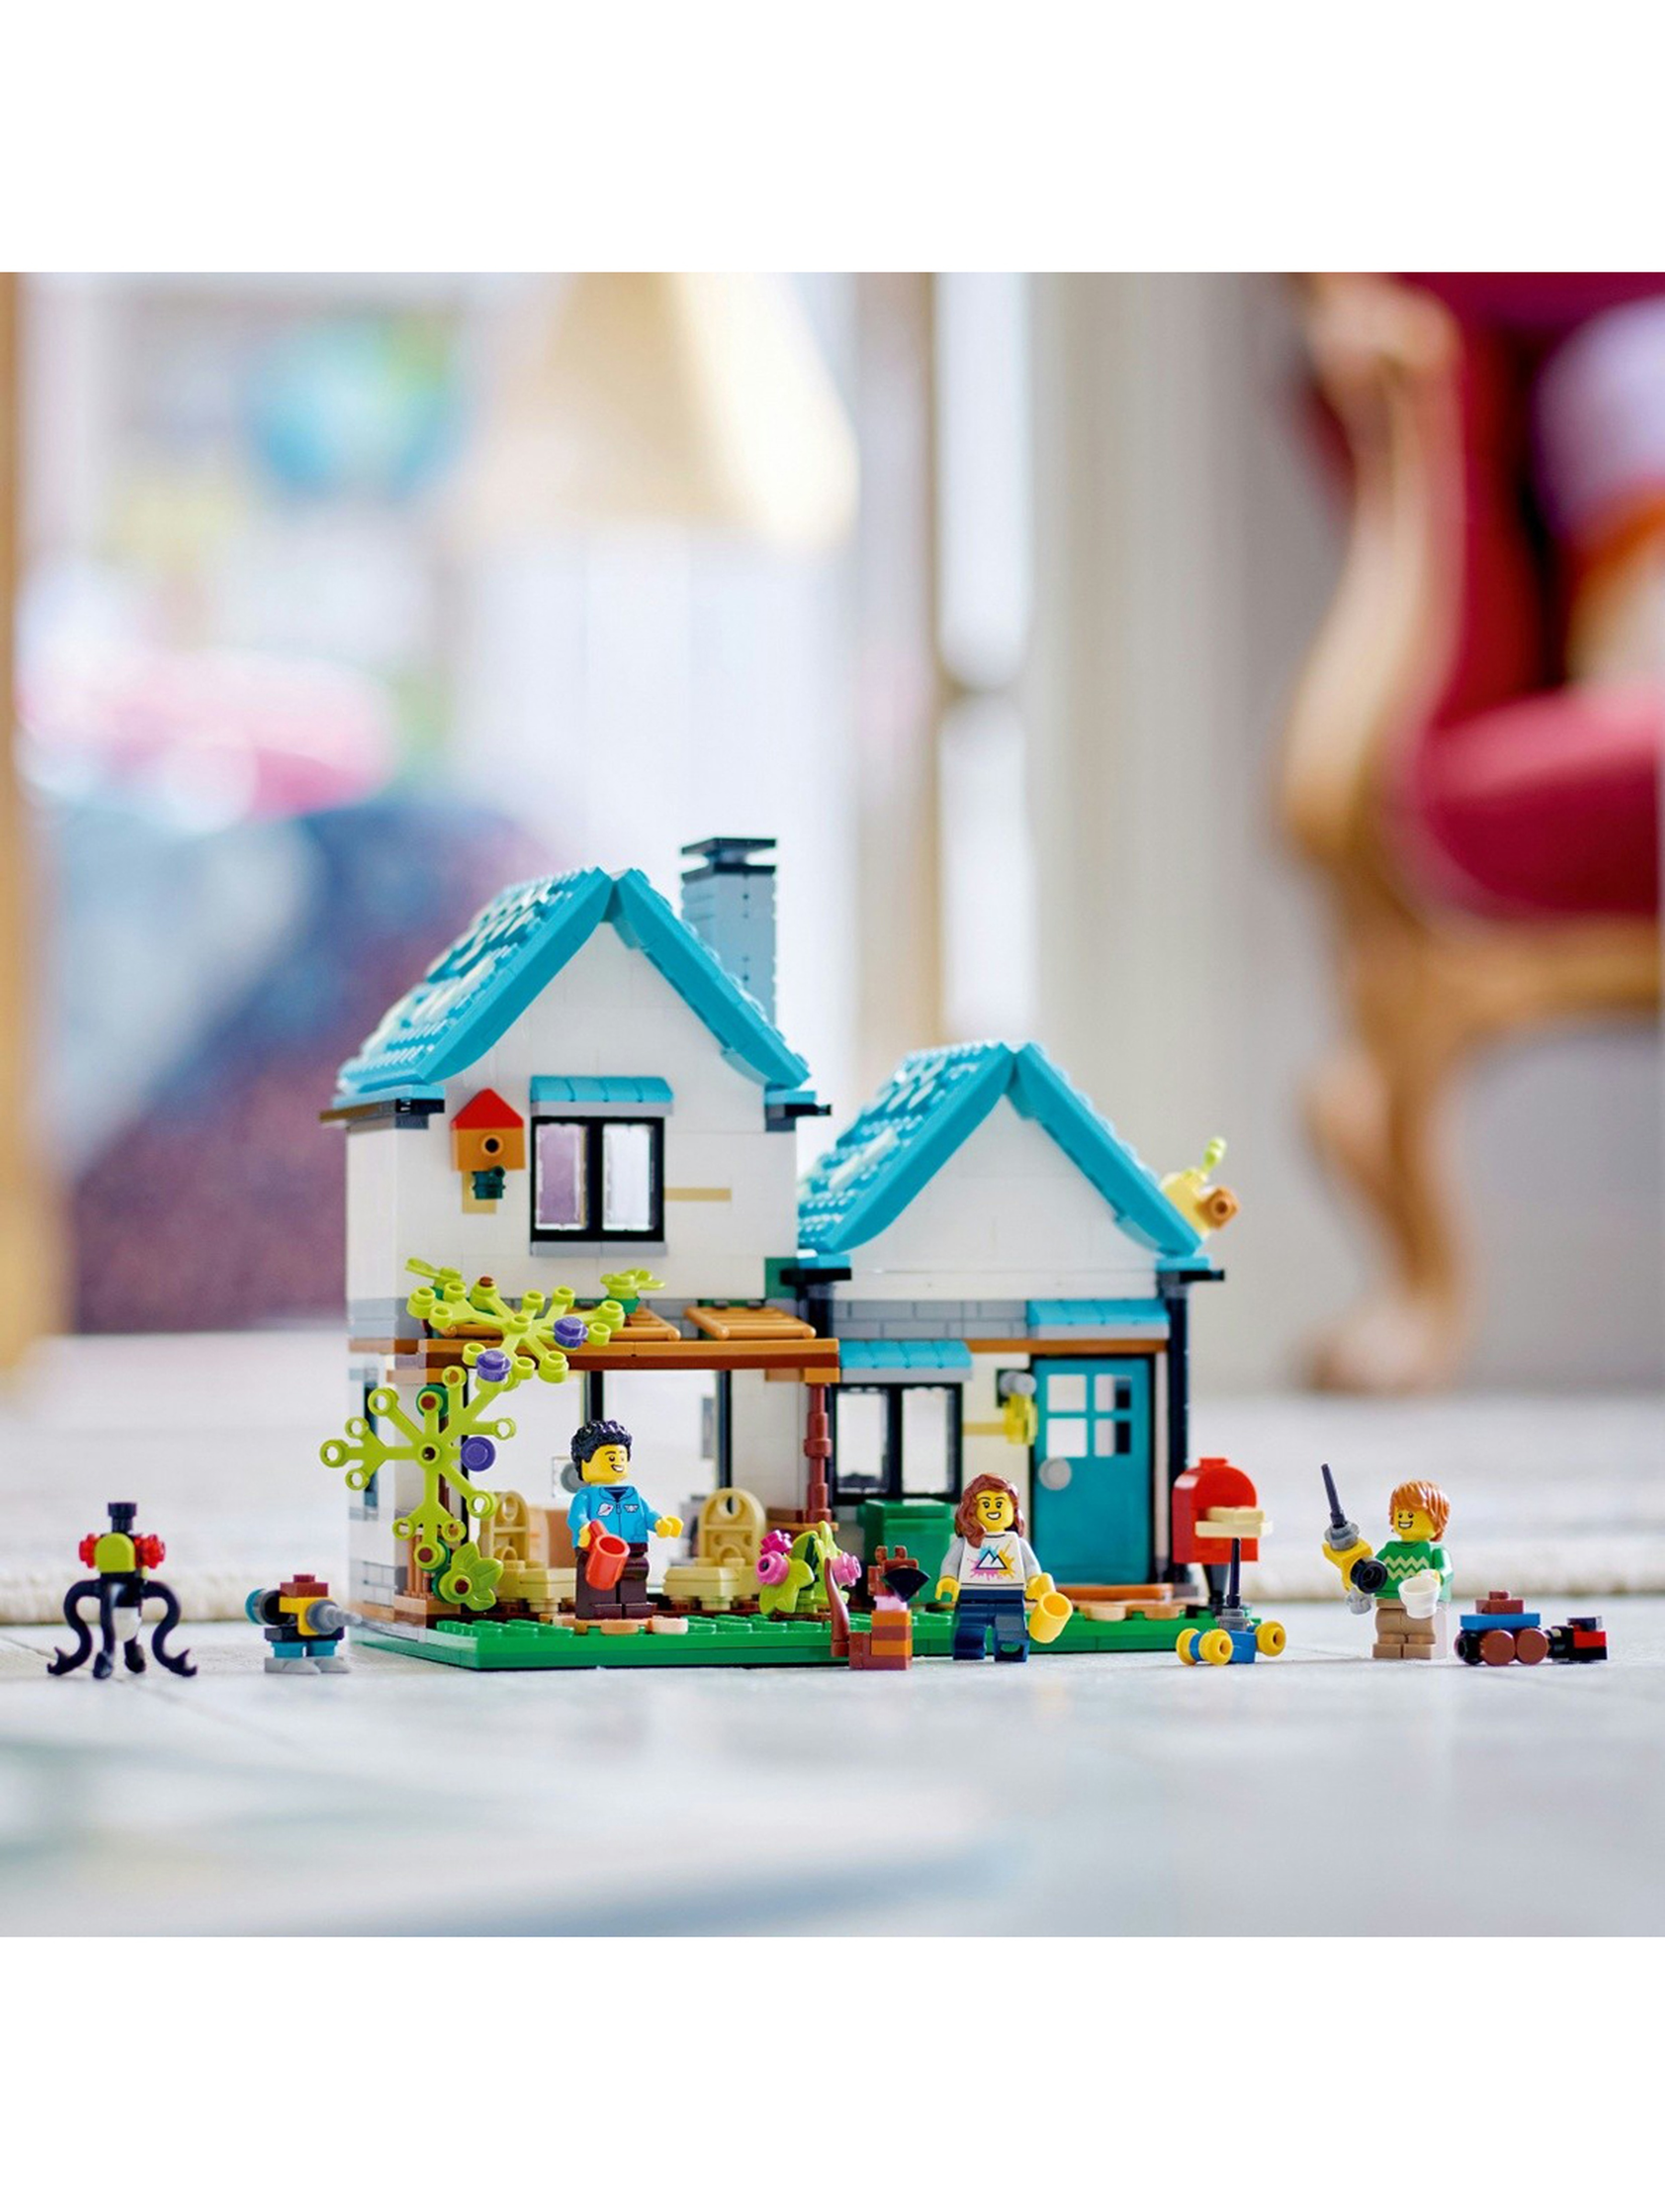 Klocki LEGO Creator 31139 Przytulny dom - 808 elementów, wiek 8 +